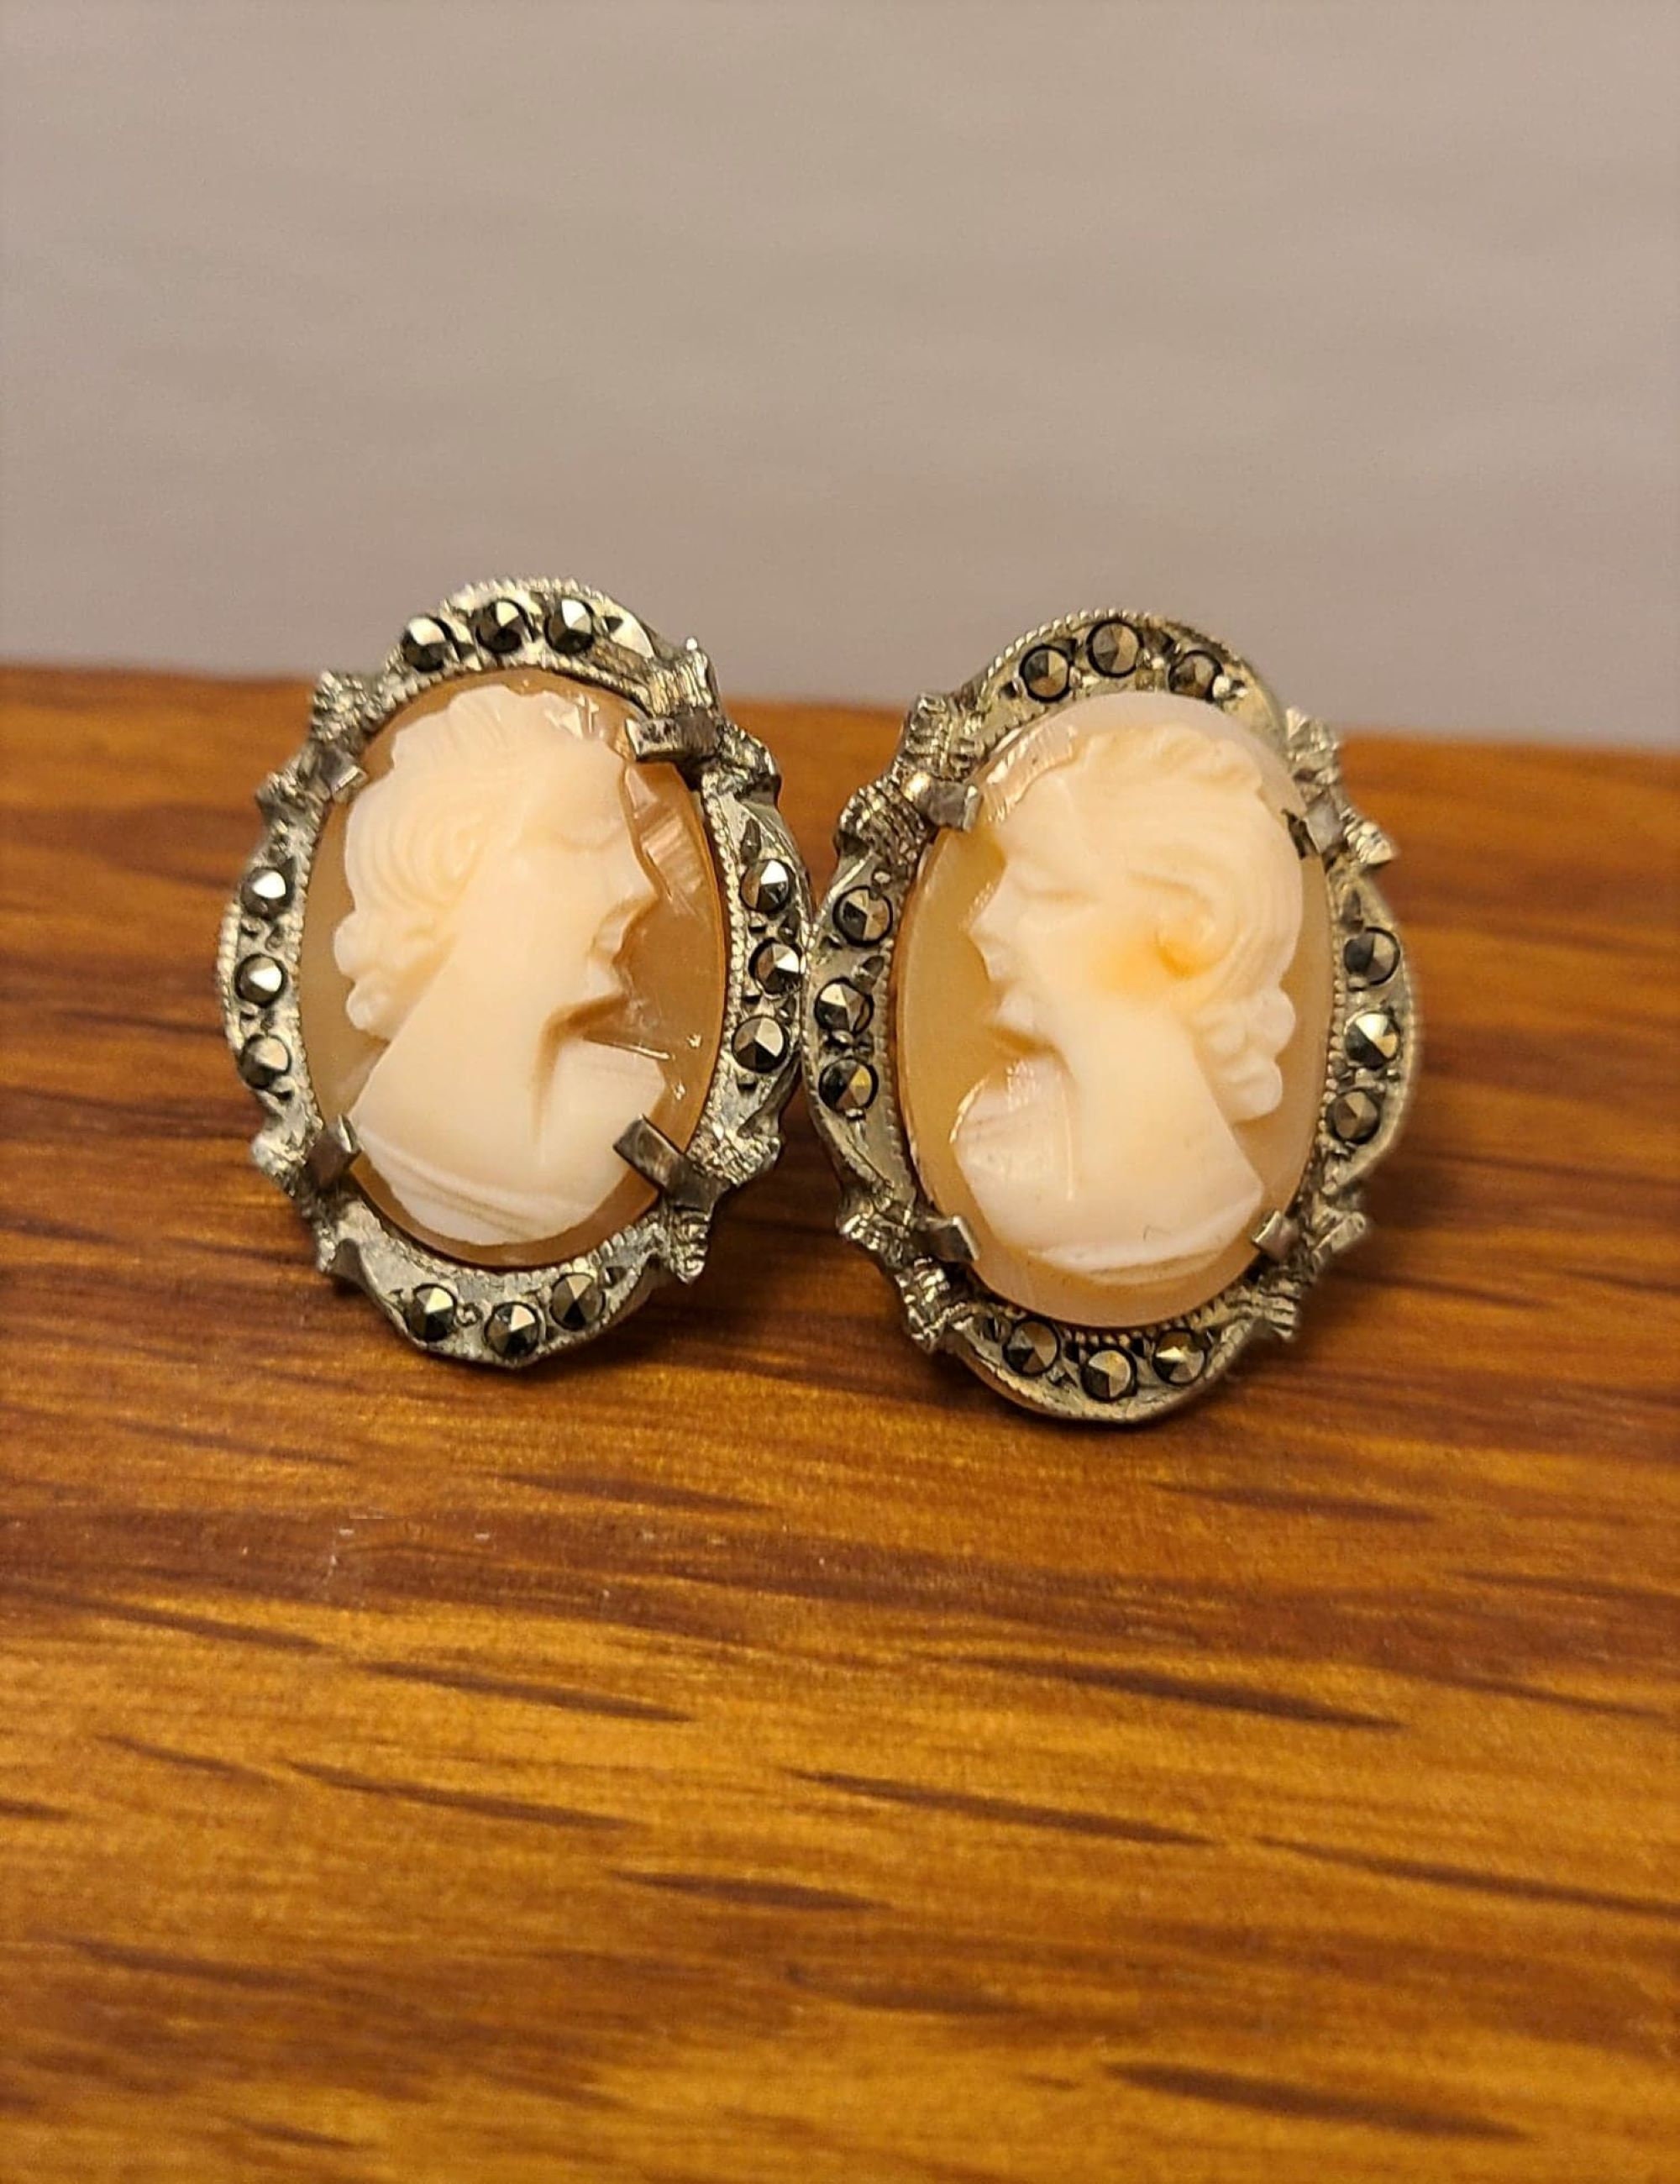 Boucles d'oreilles art déco années 30 - marcassites - modèle Stone 